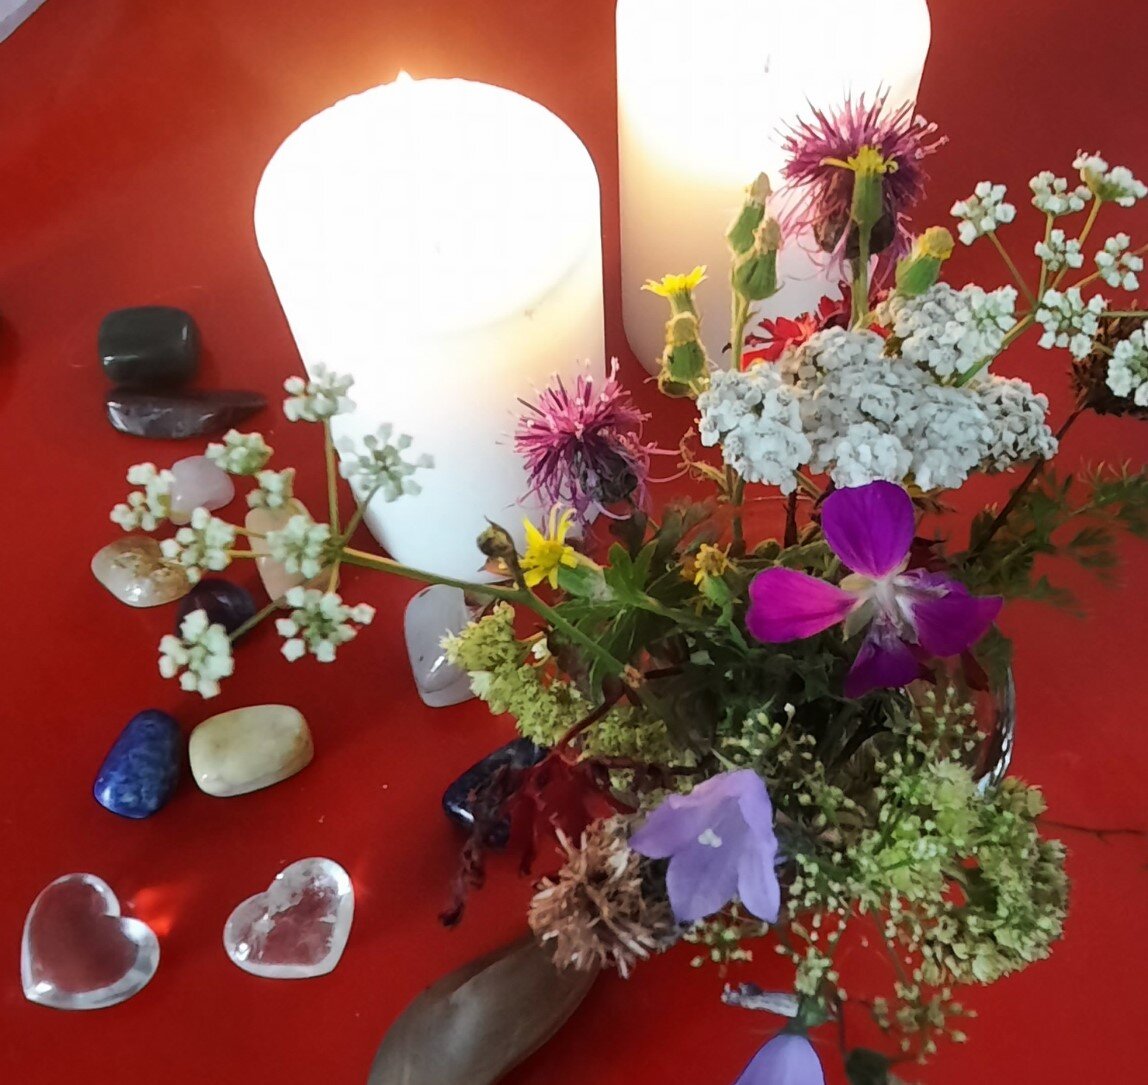 blomster og krystaller på rødt bord beskåret.jpg